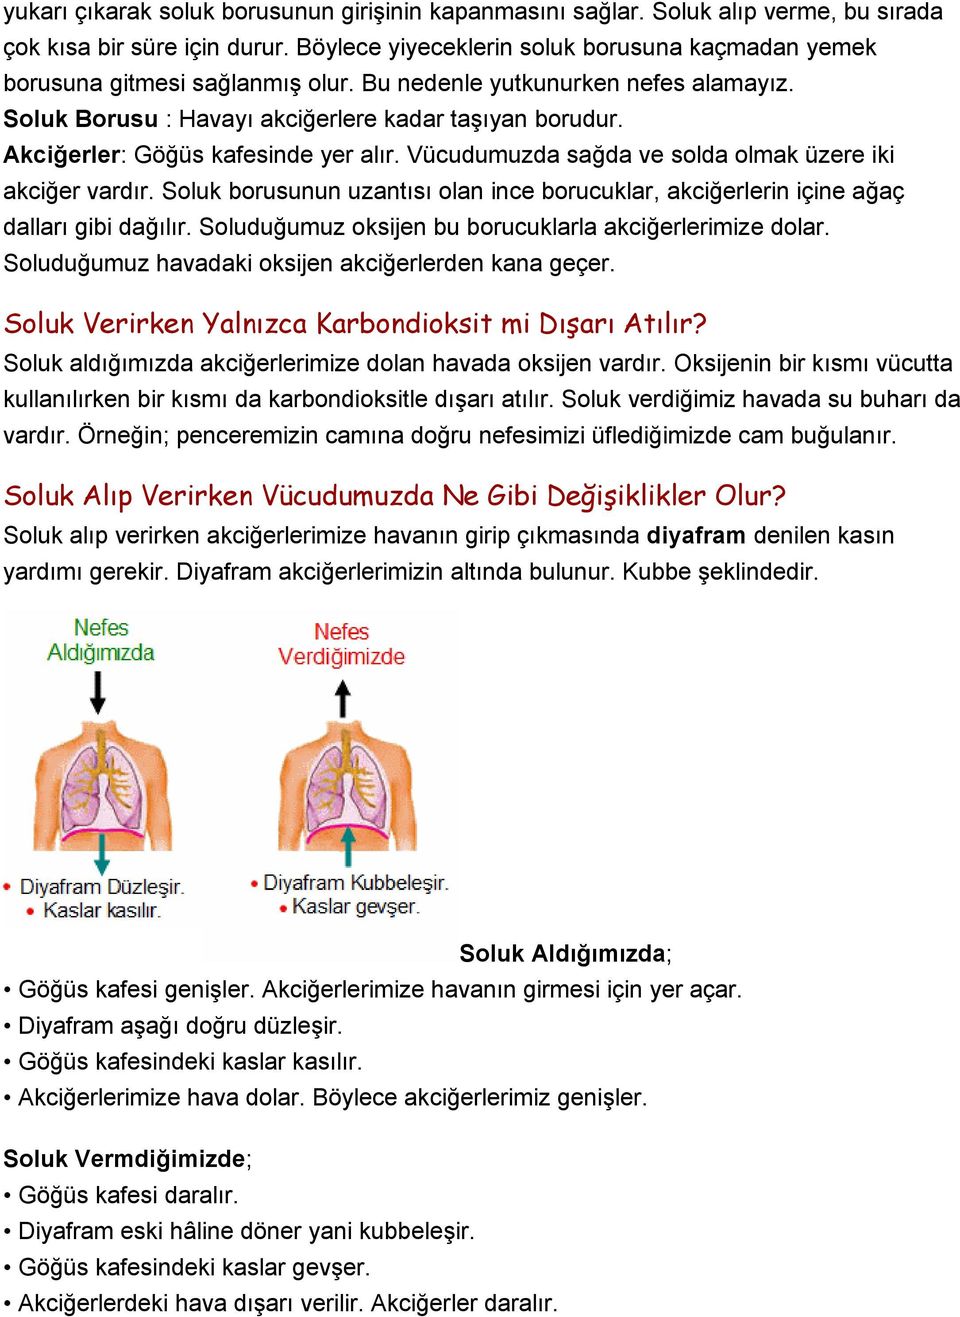 Akciğerler: Göğüs kafesinde yer alır. Vücudumuzda sağda ve solda olmak üzere iki akciğer vardır. Soluk borusunun uzantısı olan ince borucuklar, akciğerlerin içine ağaç dalları gibi dağılır.